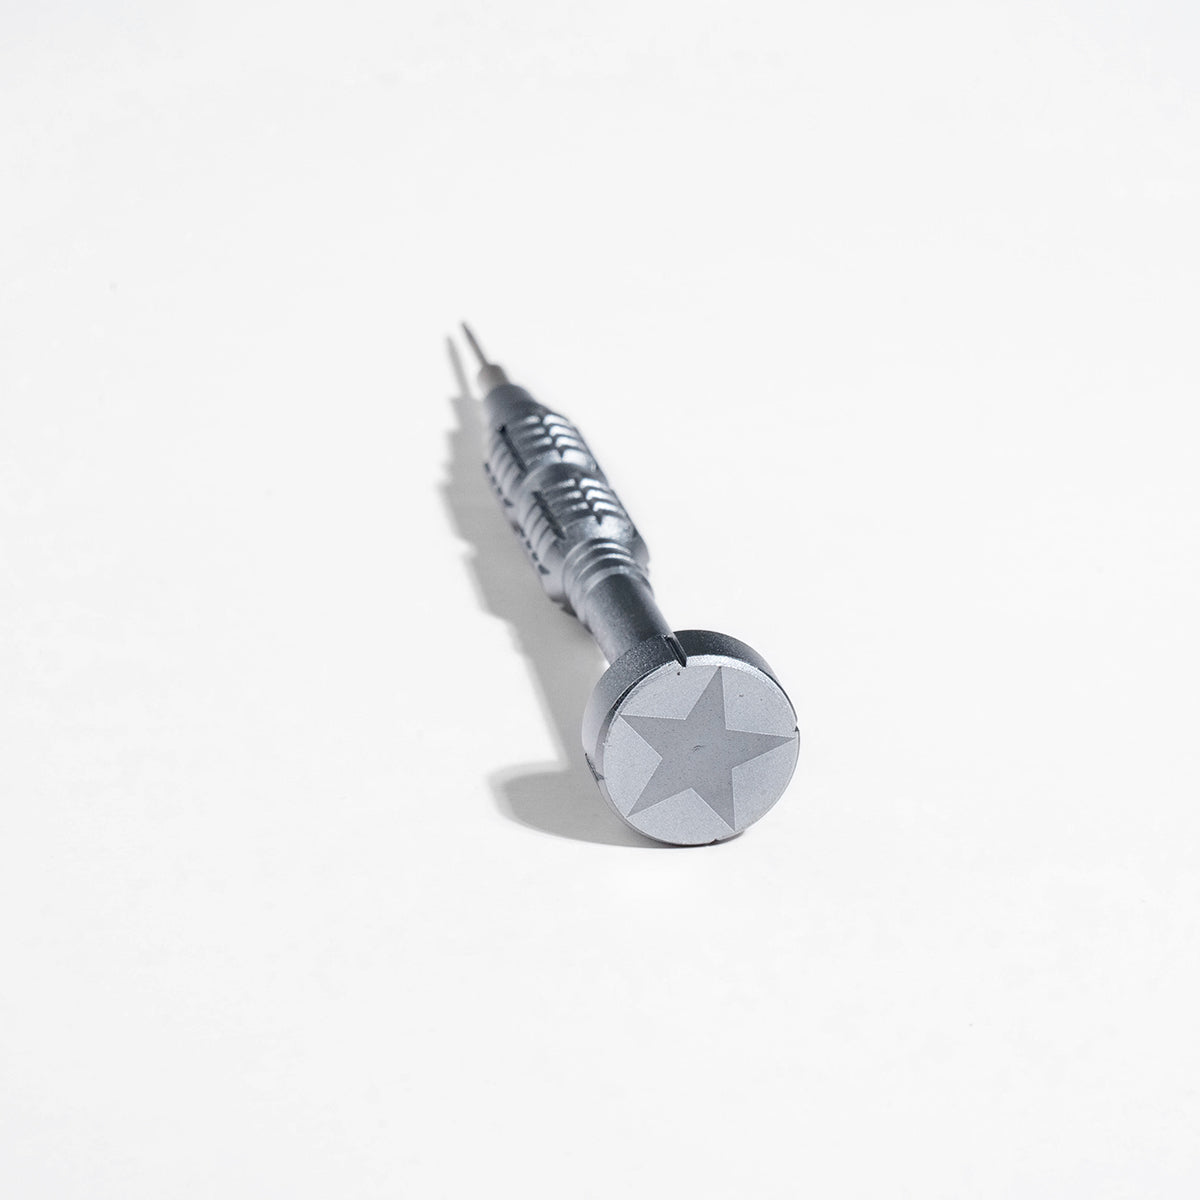 Screwdriver Precision Repair Tool Kit for iPhone Repair